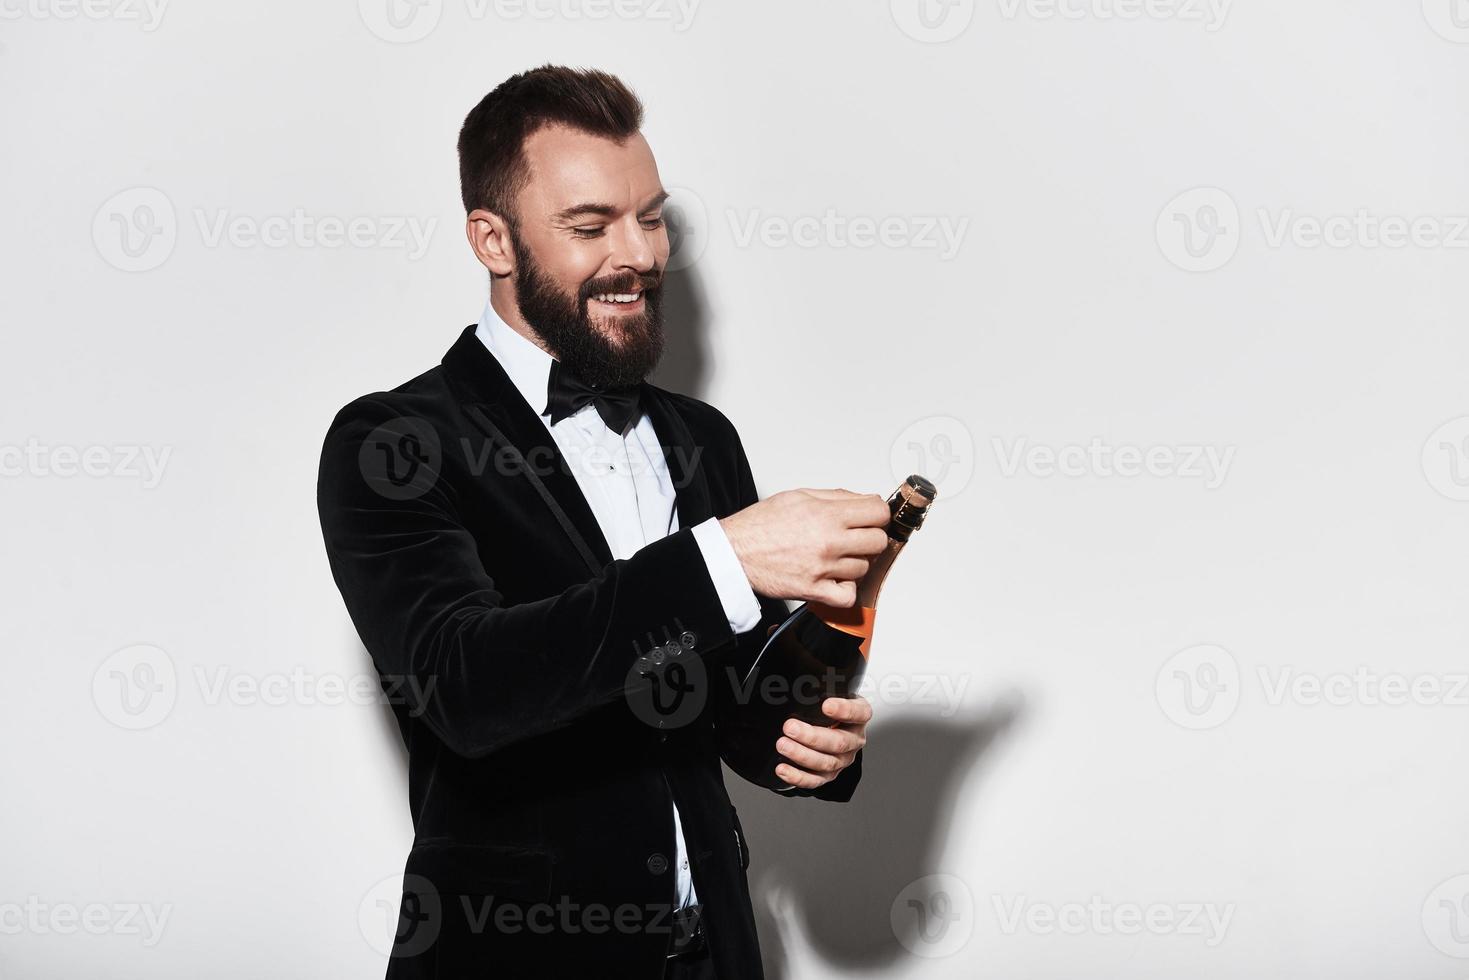 Lassen Sie uns einen hübschen jungen Mann im vollen Anzug feiern, der eine Flasche Champagner öffnet und lächelt, während er vor grauem Hintergrund steht foto